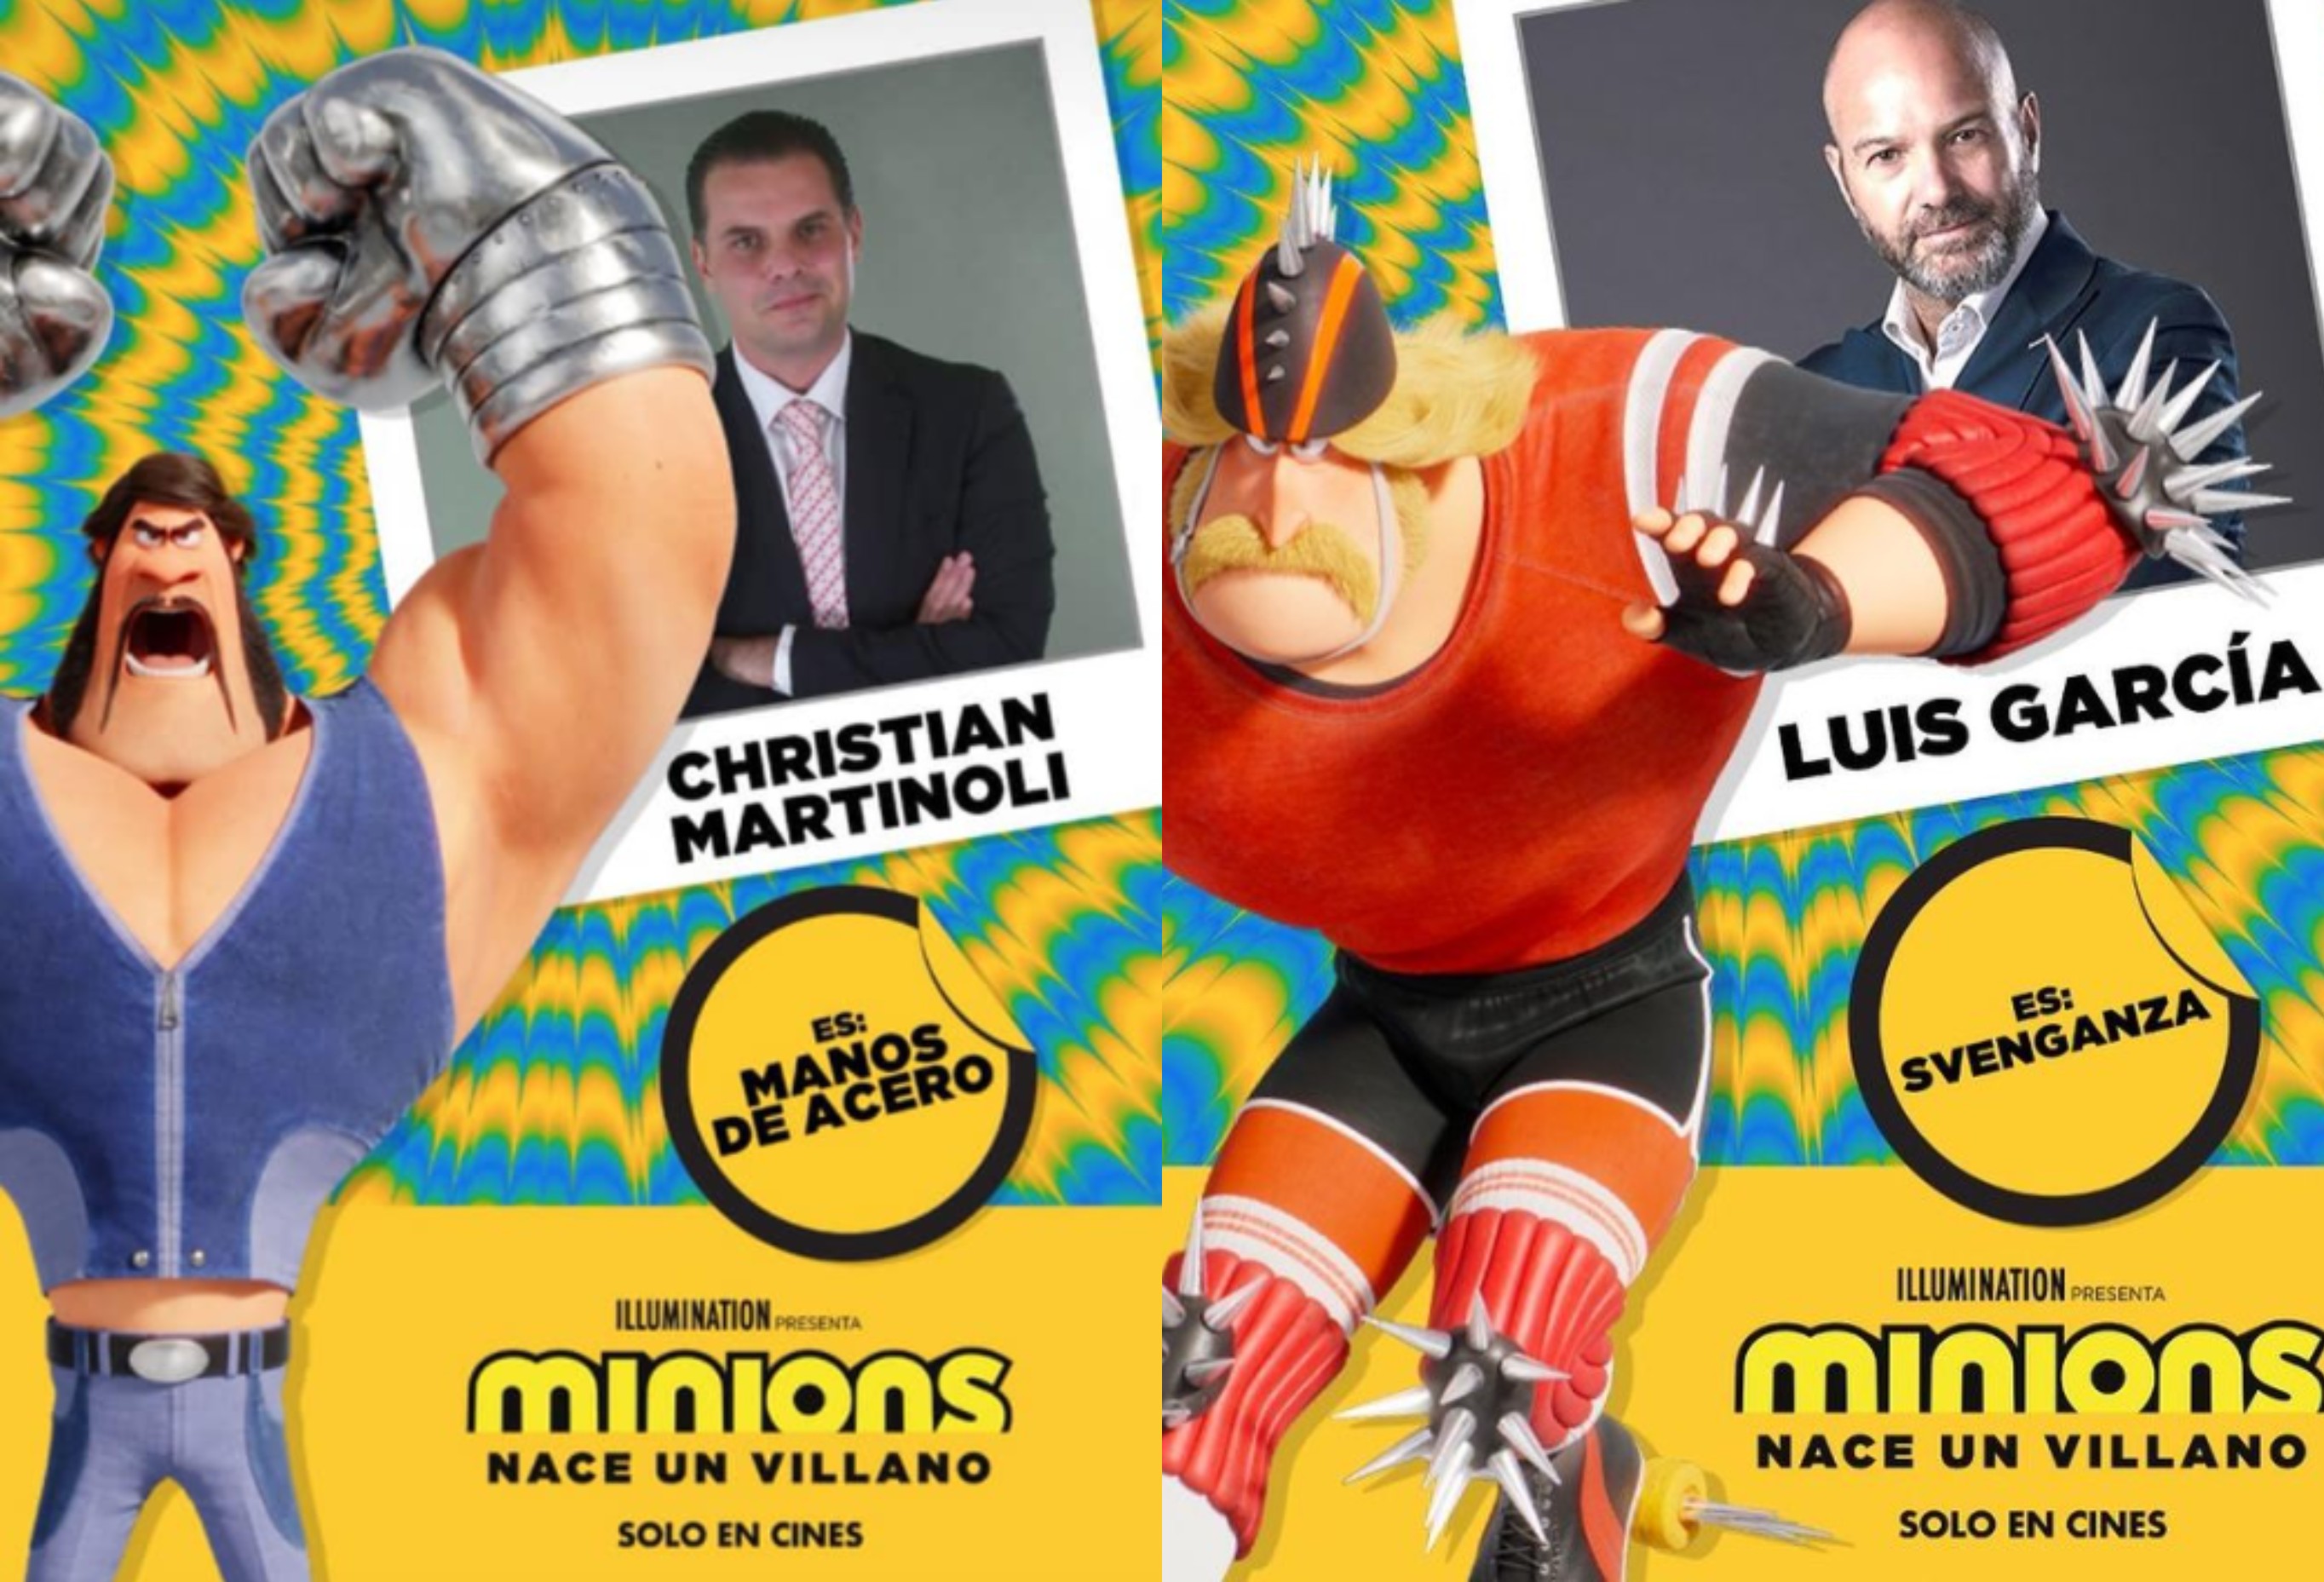 Christian Martinoli y Luis García 'aparecerán' en "Minions 2" Foto: Especial Infobae/@garciaposti/@cmartinolimx